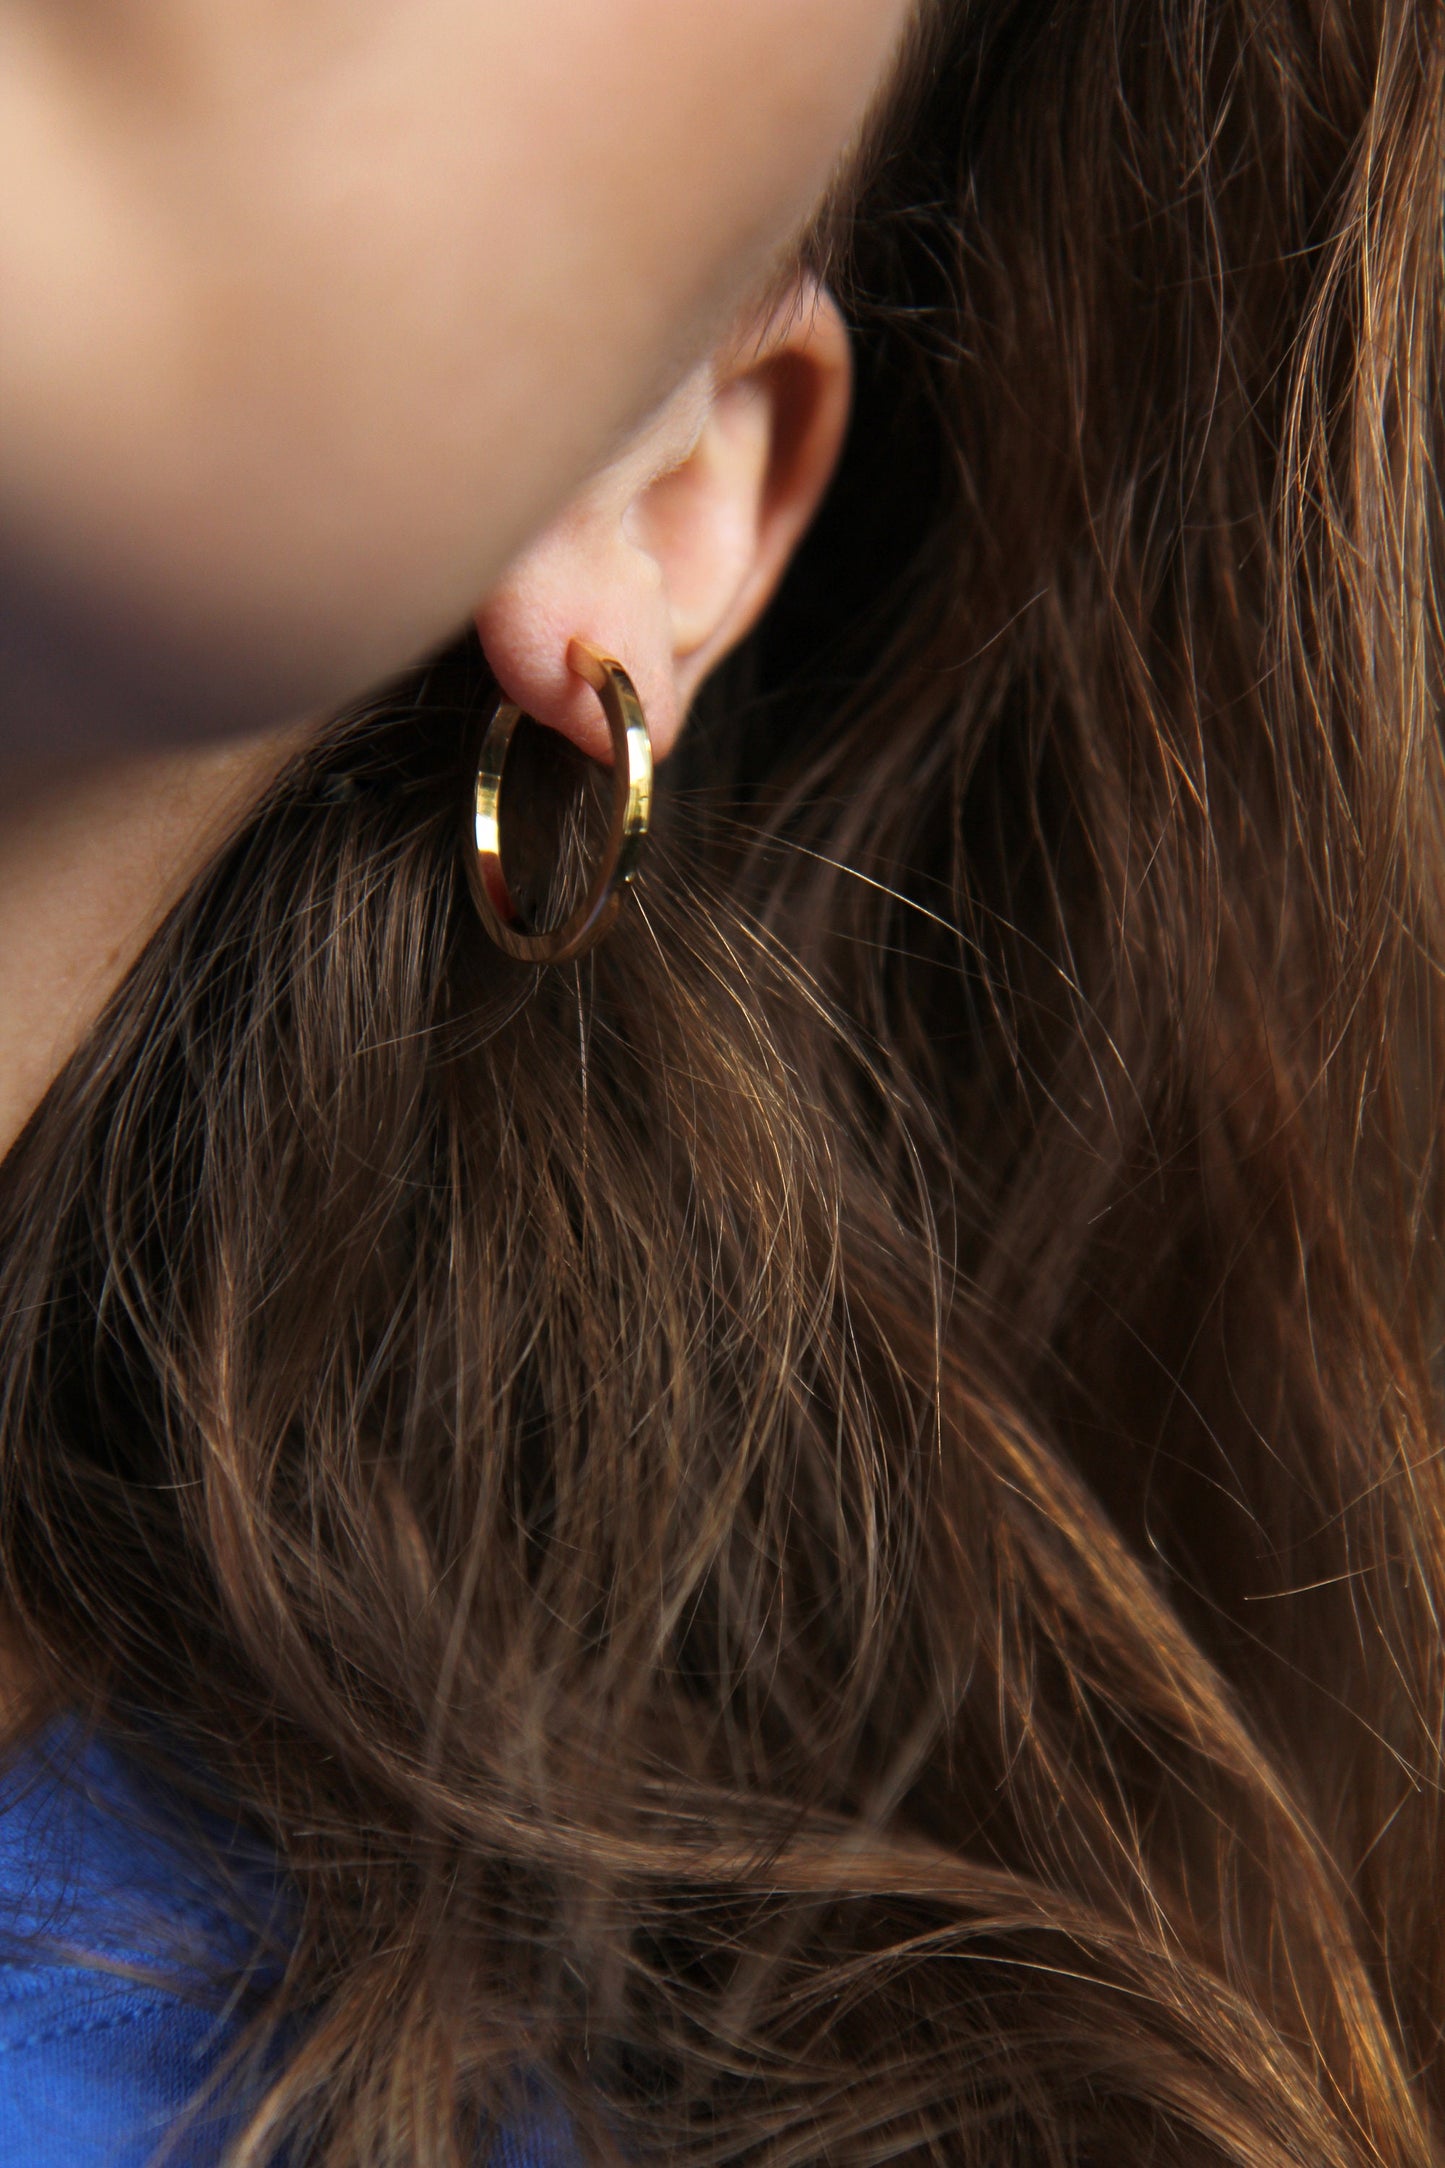 Gold-plated Silver Hoop Earrings